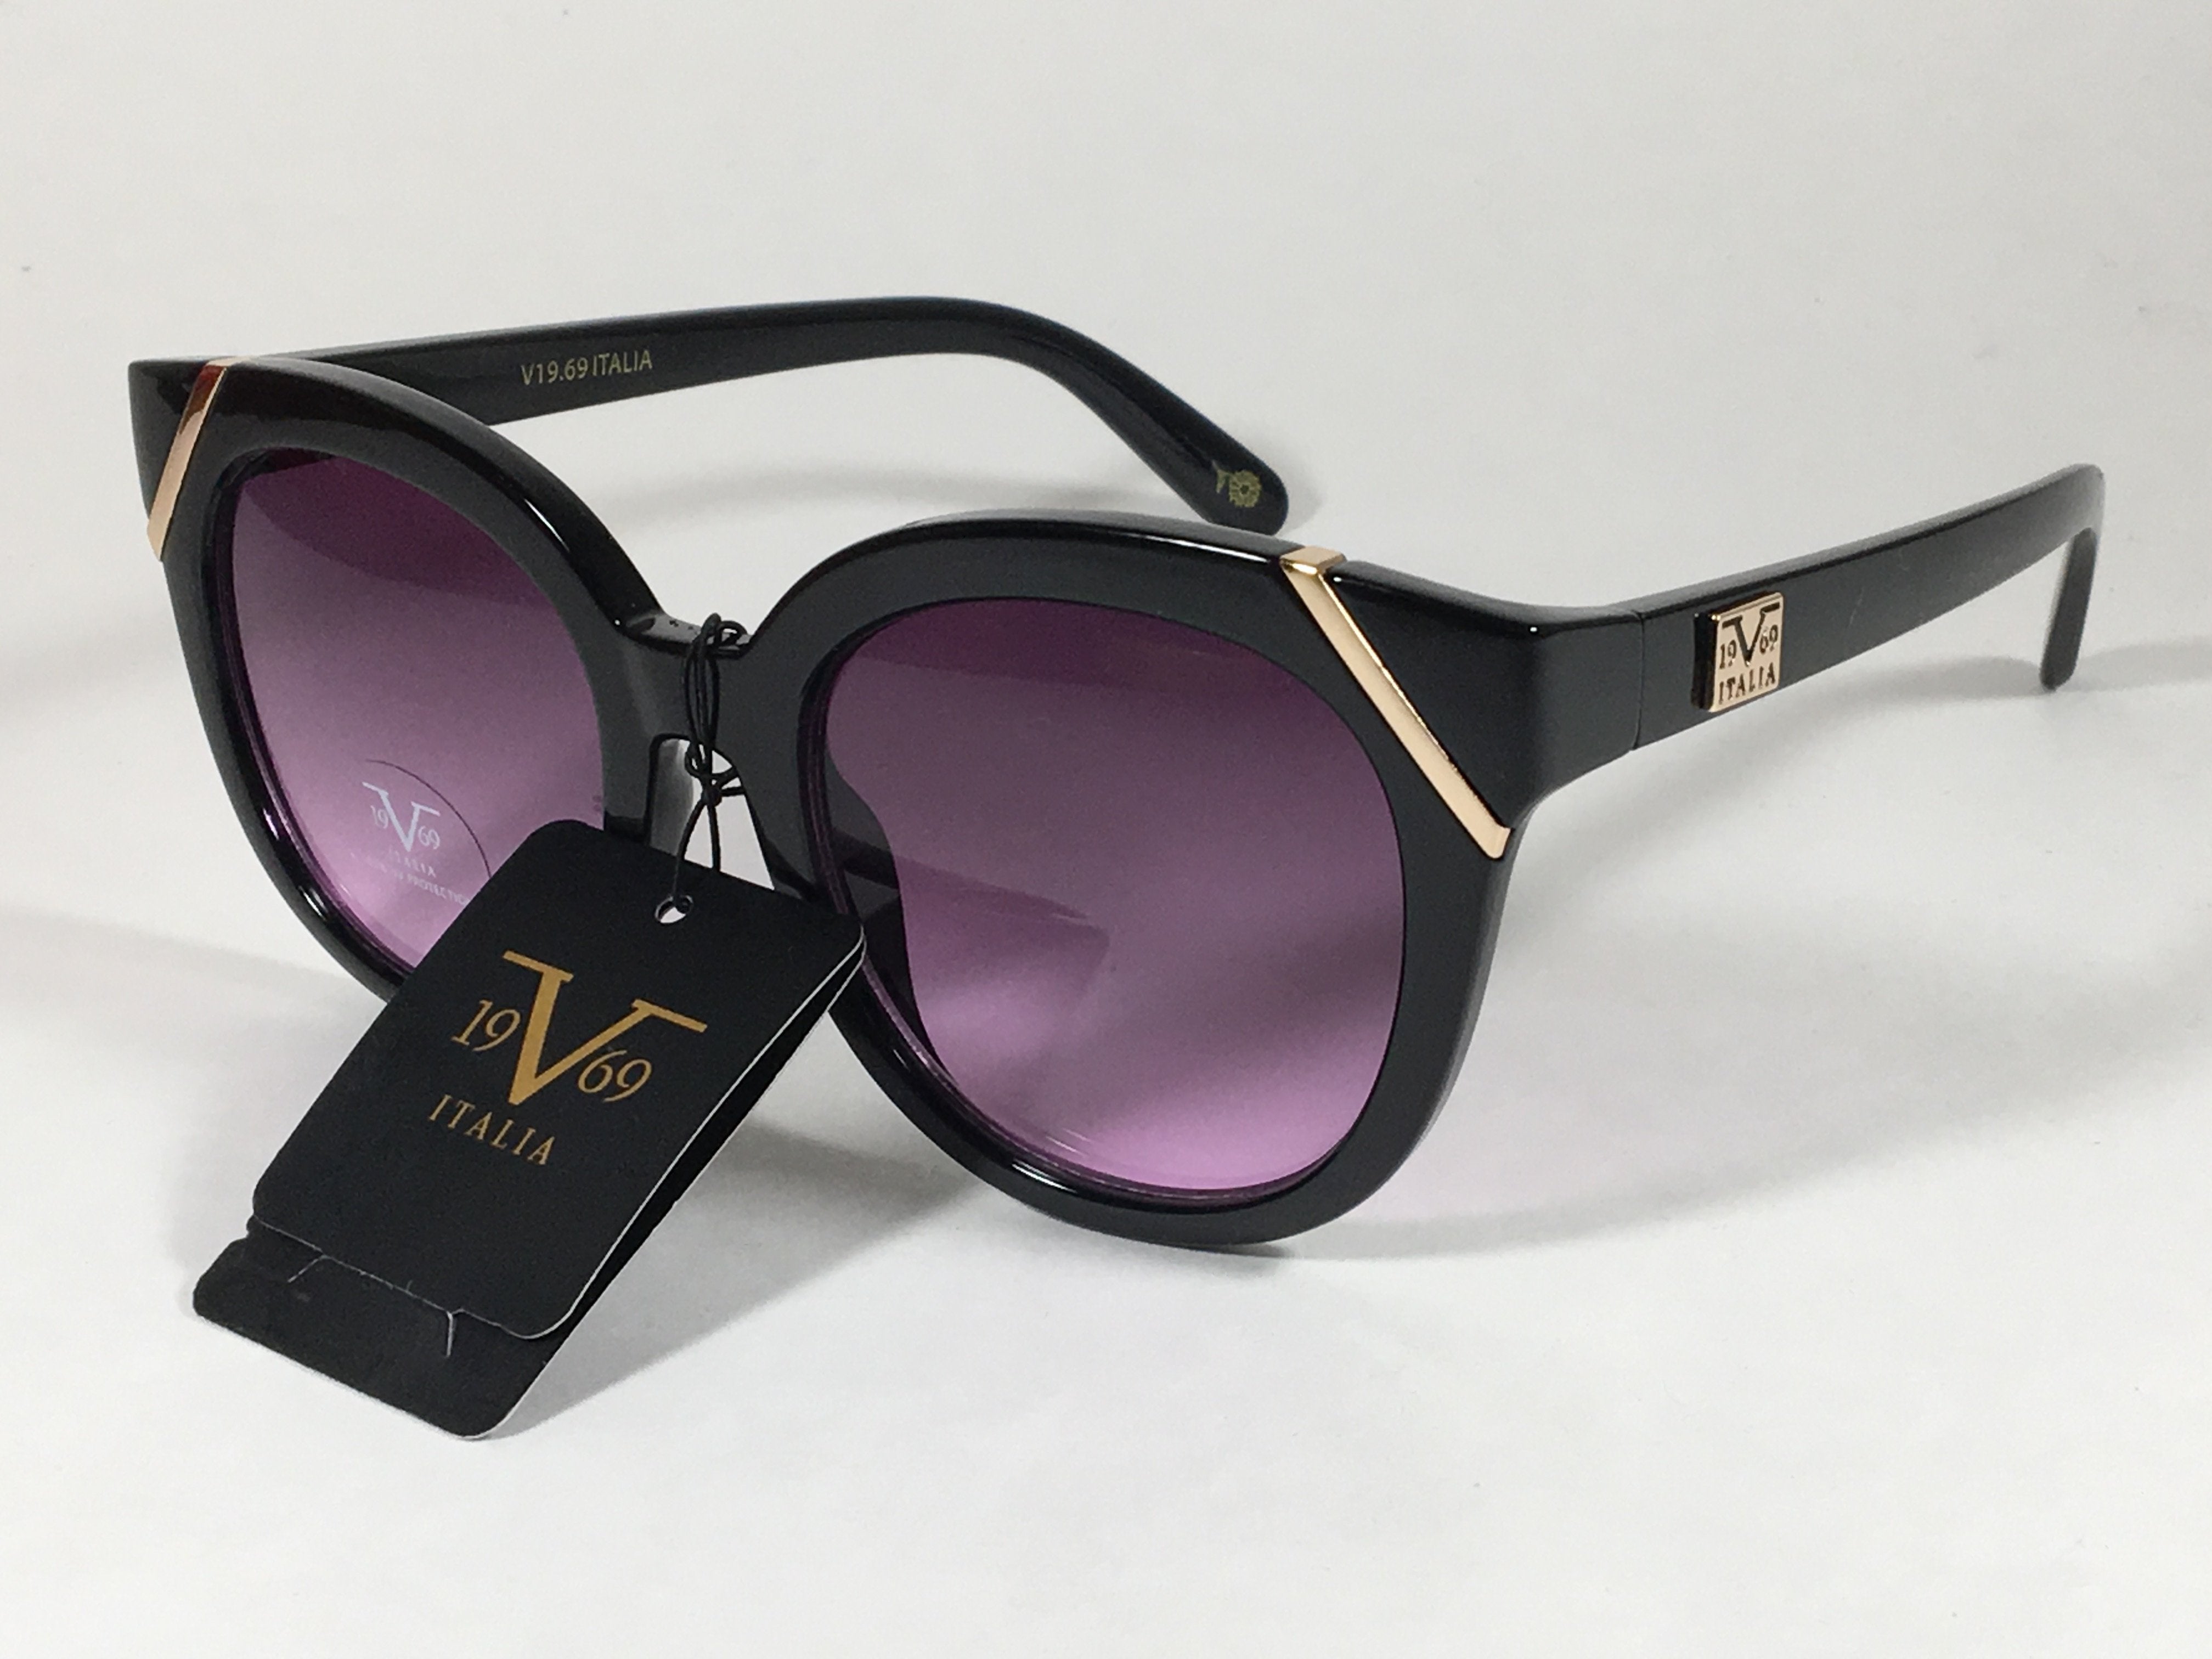 v19 69 italia sunglasses